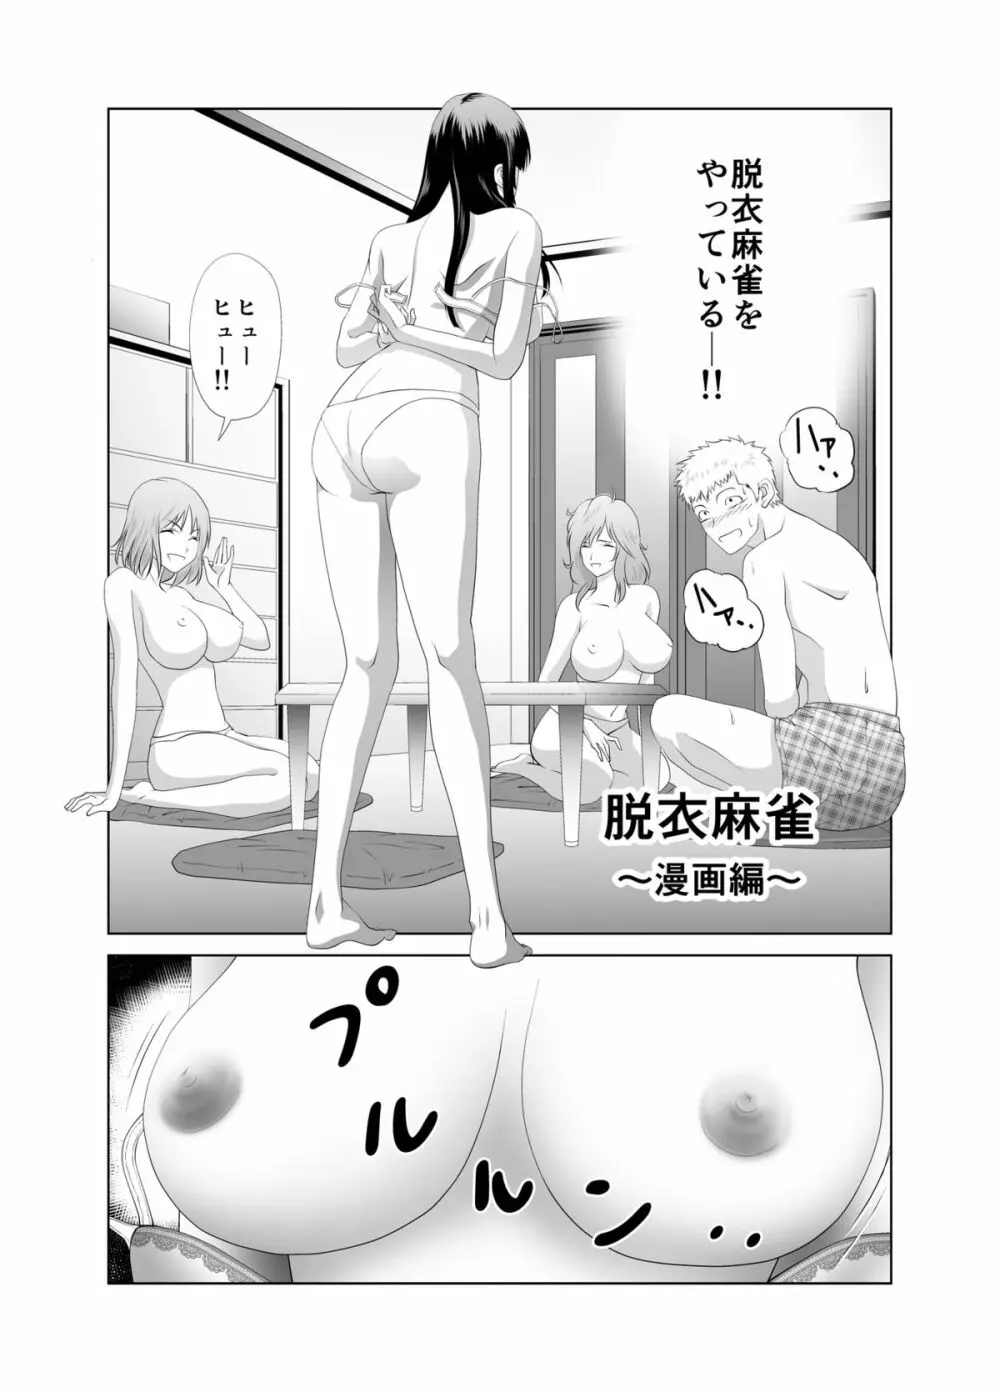 脱衣麻雀～漫画編～【完成版】 Page.2